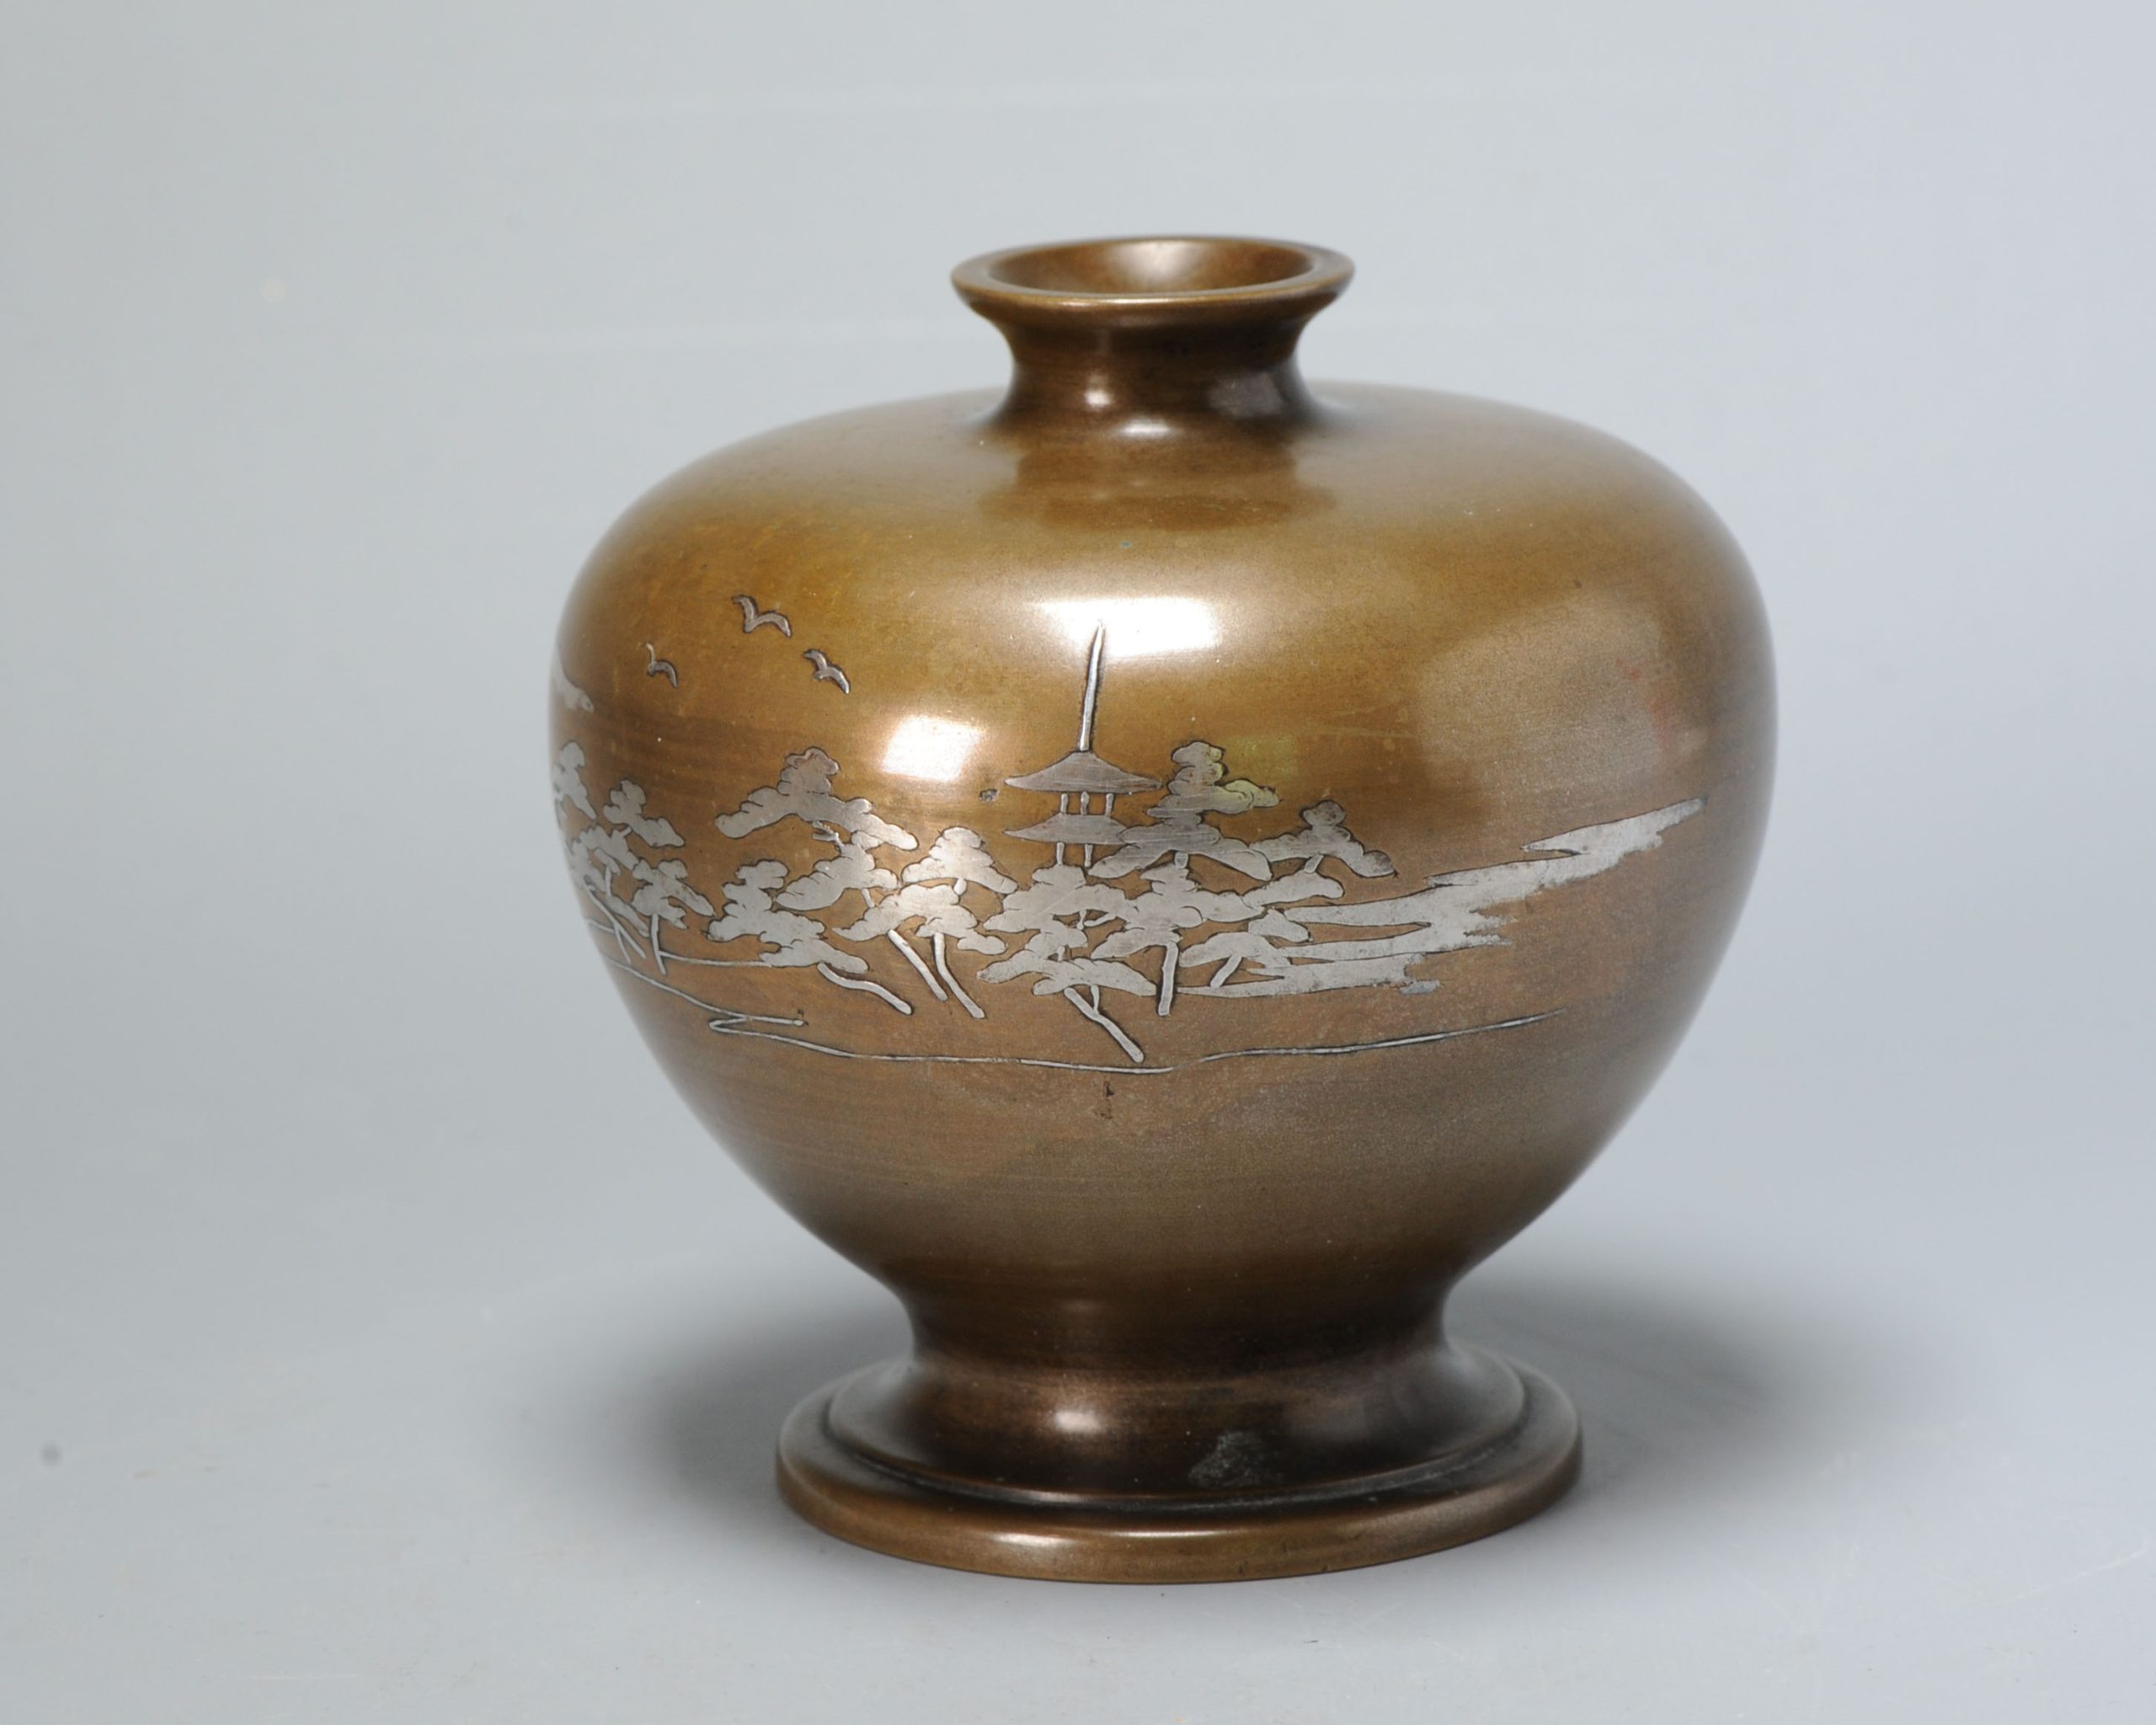 An inlaid shibuichi vase in lovely shape, Landscape, Meiji (1868-1912) era, early 20th